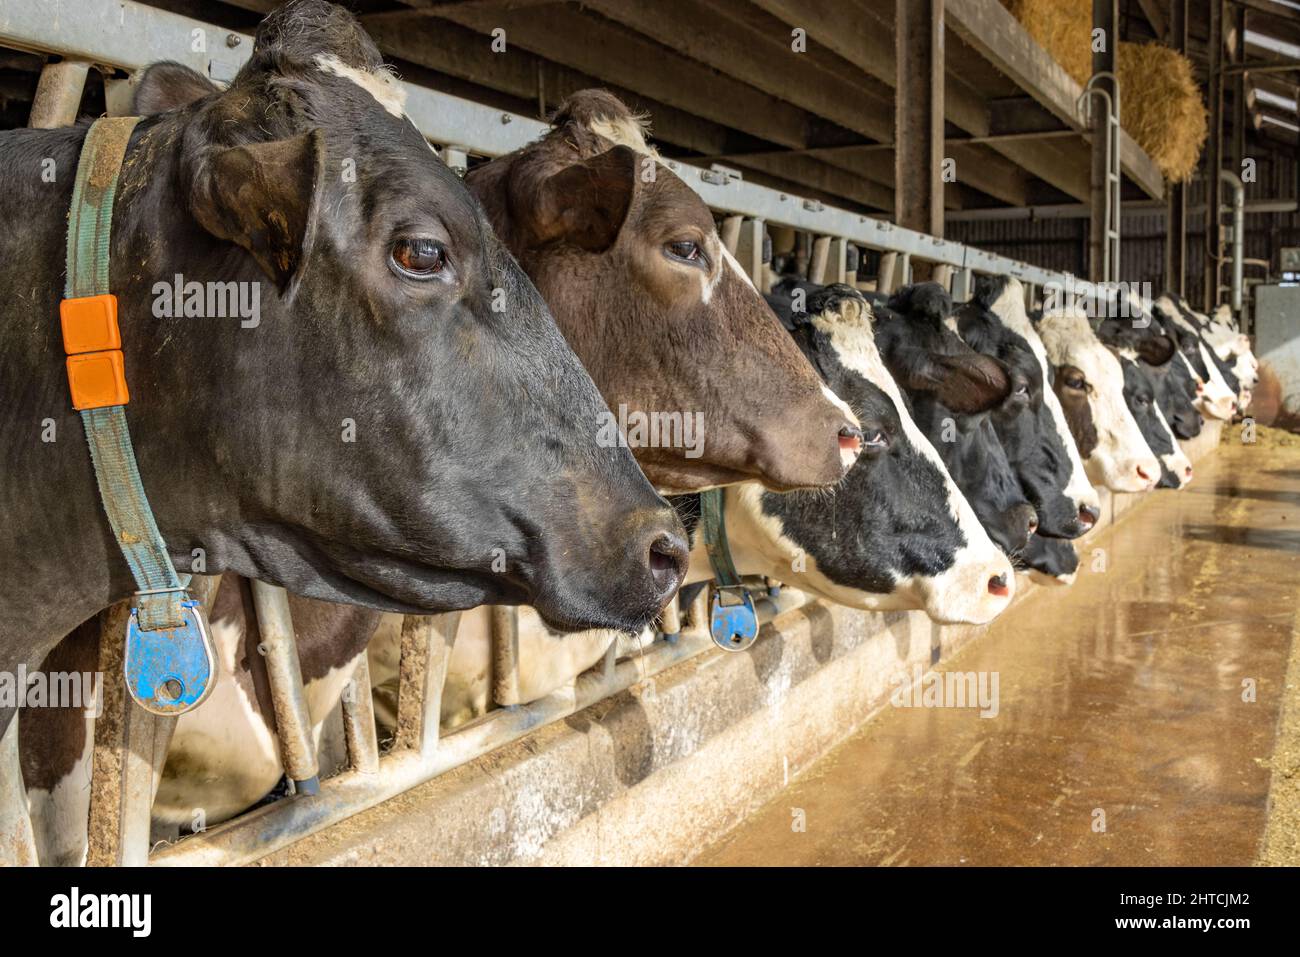 La vache se dirige dans une grange dans une rangée en attendant le temps de nourrir, piquant à travers les barres d'une porte dans une grange, tête entre les poteaux de la clôture dans une grange Banque D'Images